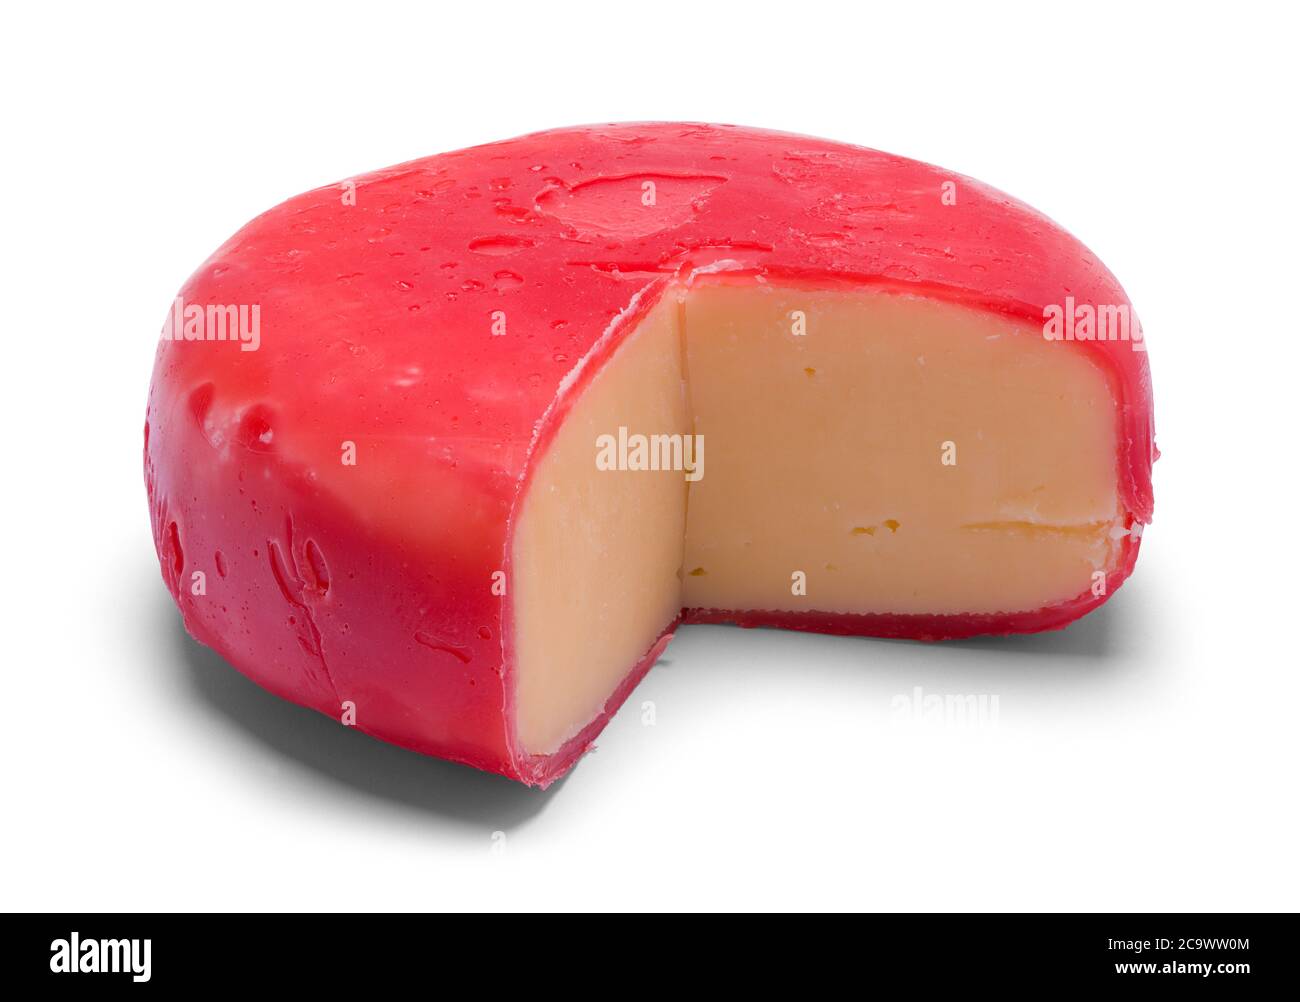 Couper le pain rond rouge de fromage Gouda isolé sur blanc. Banque D'Images